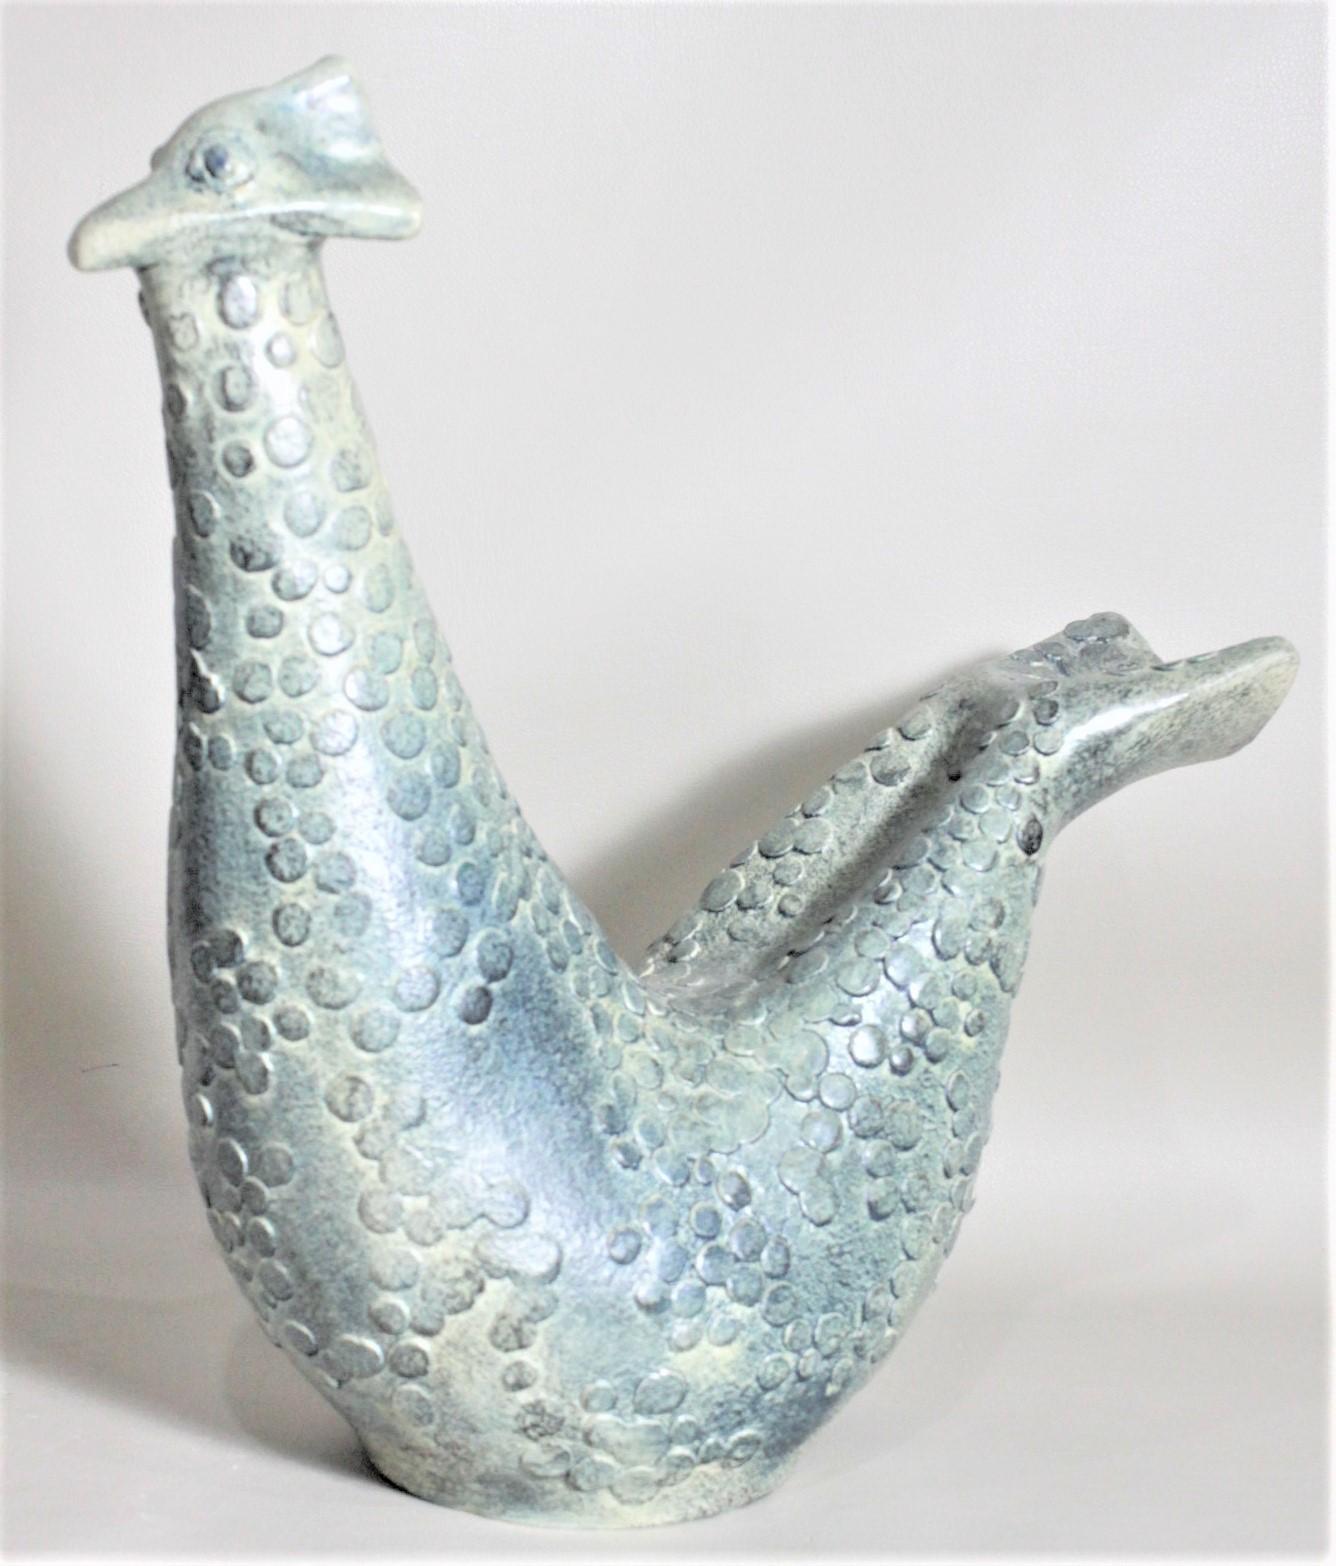 Cette sculpture unique et fantaisiste d'oiseau en poterie a été réalisée par Theo et Susan Harlander de la société Brooklin Pottery du Canada vers 1965 dans le style moderne du milieu du siècle. La sculpture est un oiseau stylisé assis avec un bec